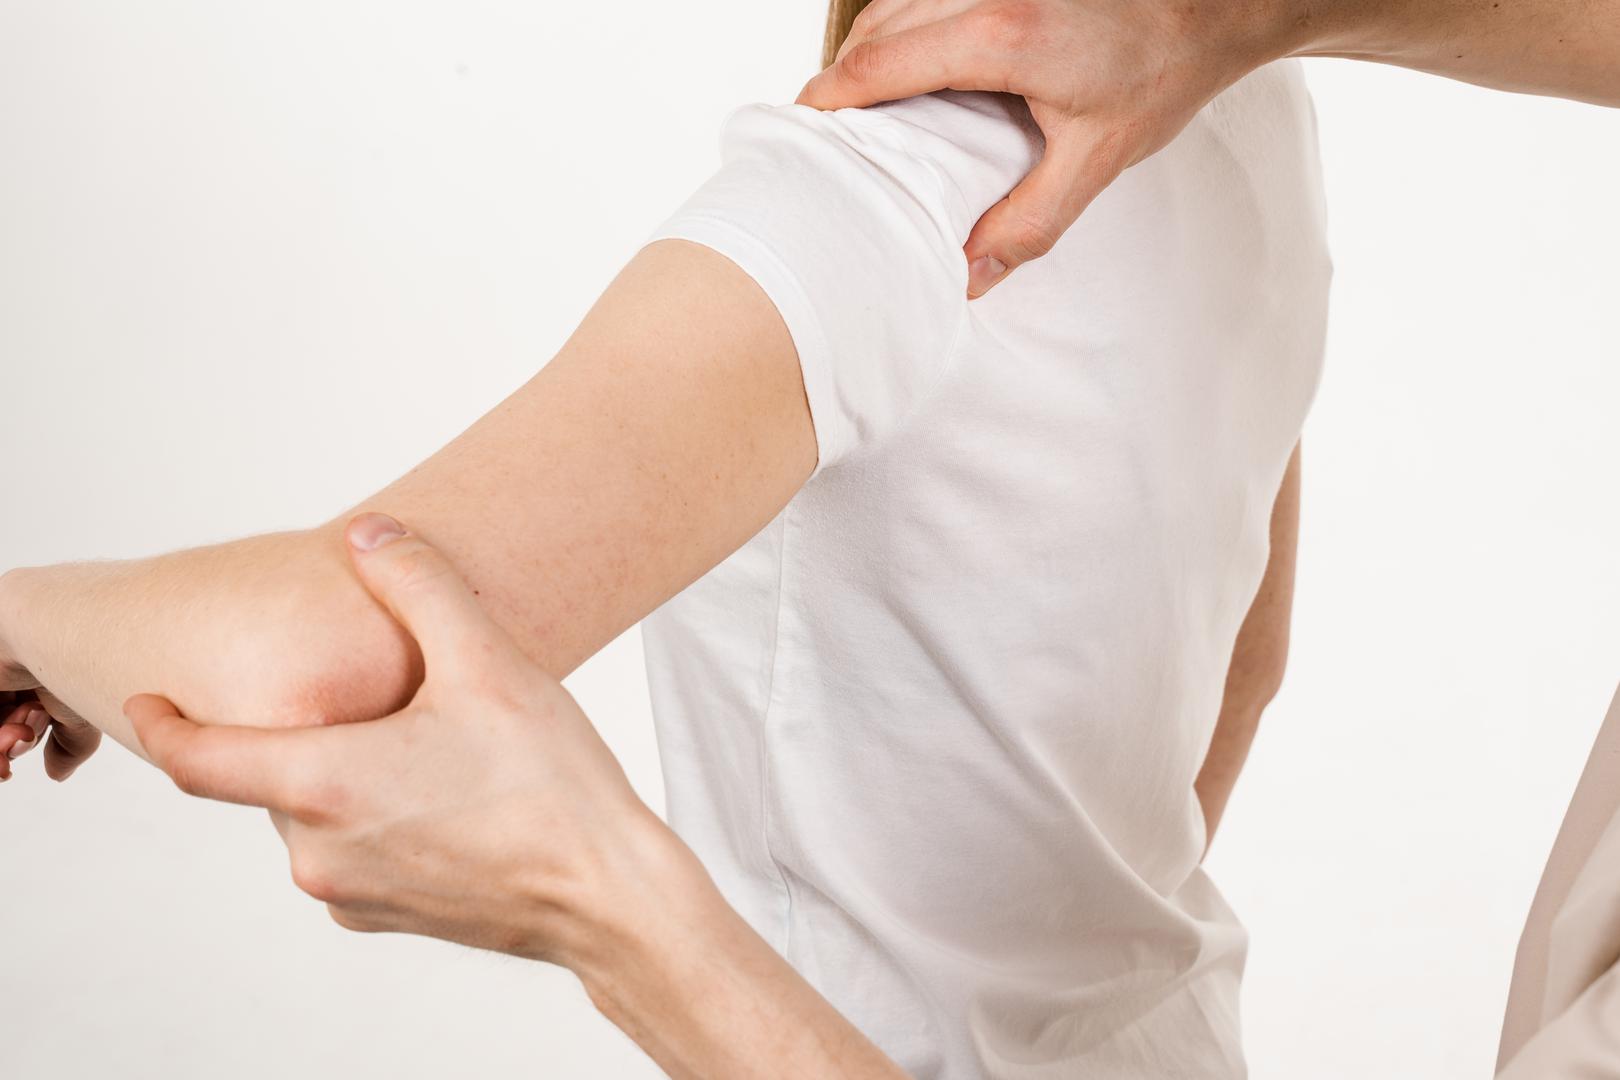 Ojačajte ramena: "Rame je inherentno najnestabilniji zglob u tijelu i uvelike se oslanja na mišićnu strukturu kako bi ponudilo potporu i stabilnost", objasnila je Anju Jaggi, klinička voditeljica terapija u Kraljevskoj nacionalnoj ortopedskoj bolnici. Često vježbanje ruku pomoći će u jačanju zglobova ramena, kao i fokusiranje na snagu stiska. "Ako radite na svom stisku, to će imati dodatni učinak za pomoć vašem ramenu", rekla je Jaggi. Stisnuti šaku u čvrstu šaku, a zatim raširiti prste do maksimuma 10 do 15 puta dnevno jednostavan je i učinkovit pokret za poboljšanje stiska.